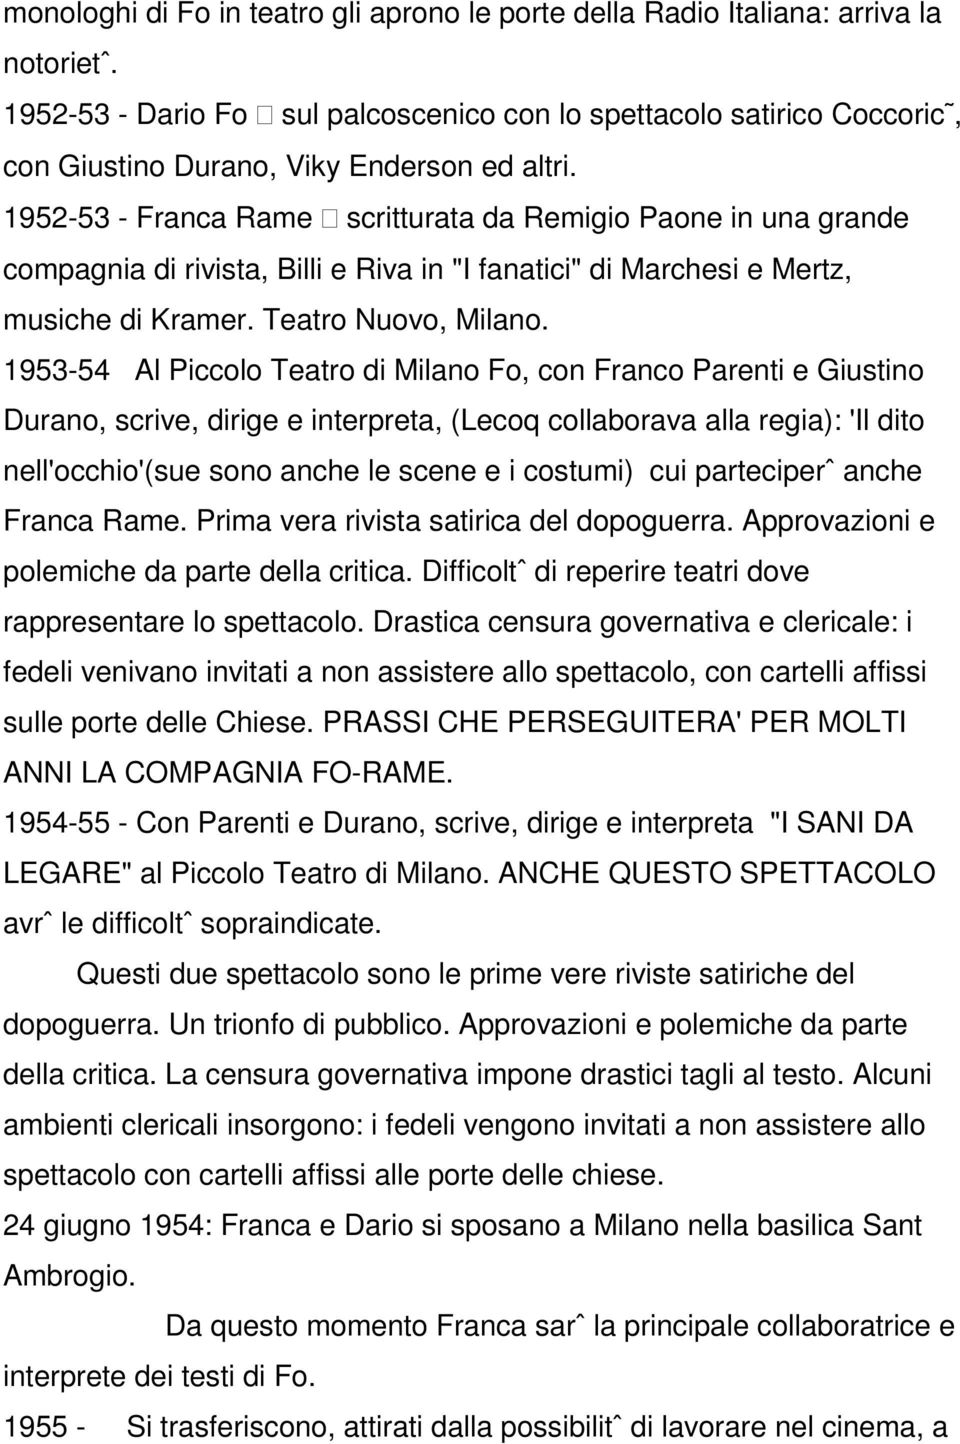 1952-53 - Franca Rame scritturata da Remigio Paone in una grande compagnia di rivista, Billi e Riva in "I fanatici" di Marchesi e Mertz, musiche di Kramer. Teatro Nuovo, Milano.